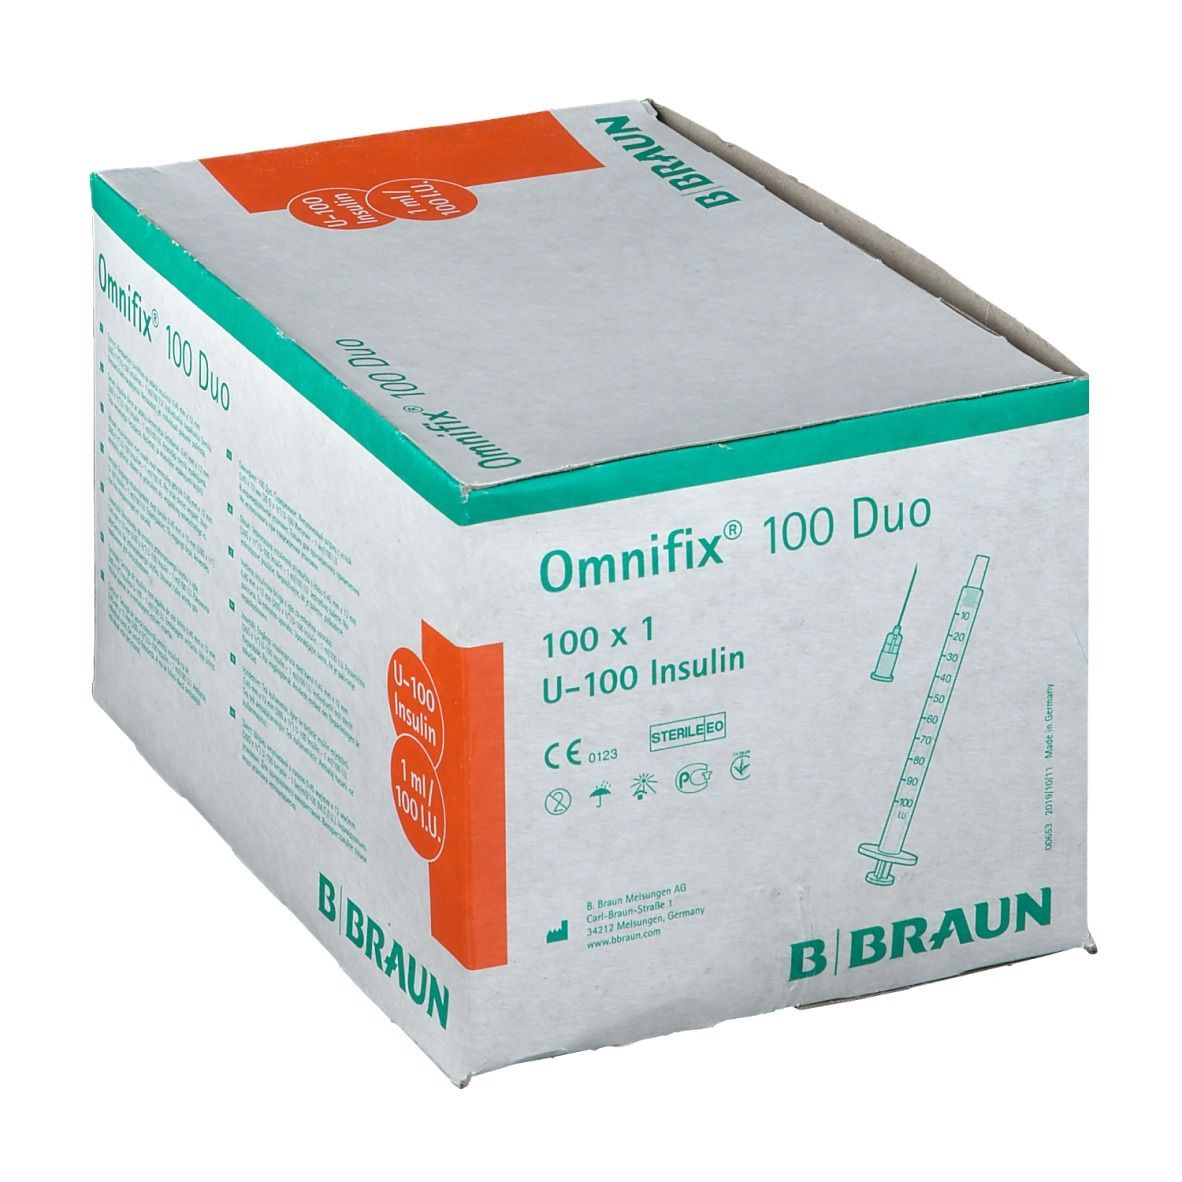 Omnifix® 100 Duo